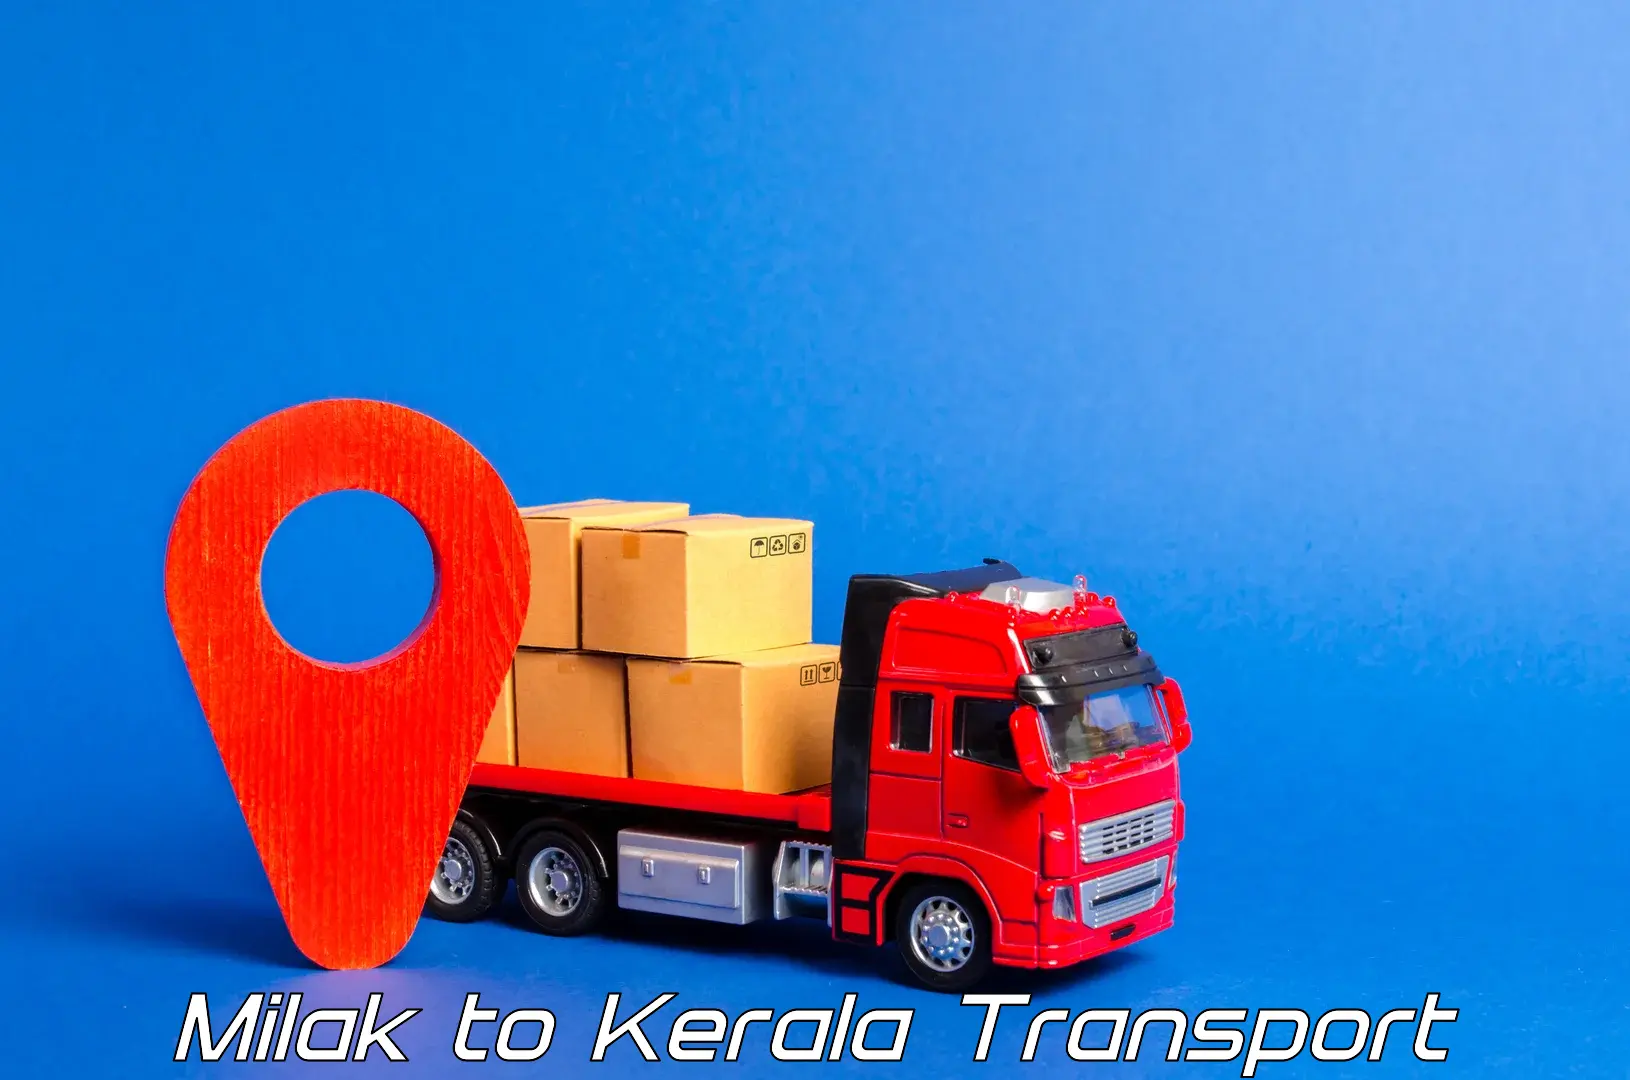 Furniture transport service Milak to Kerala